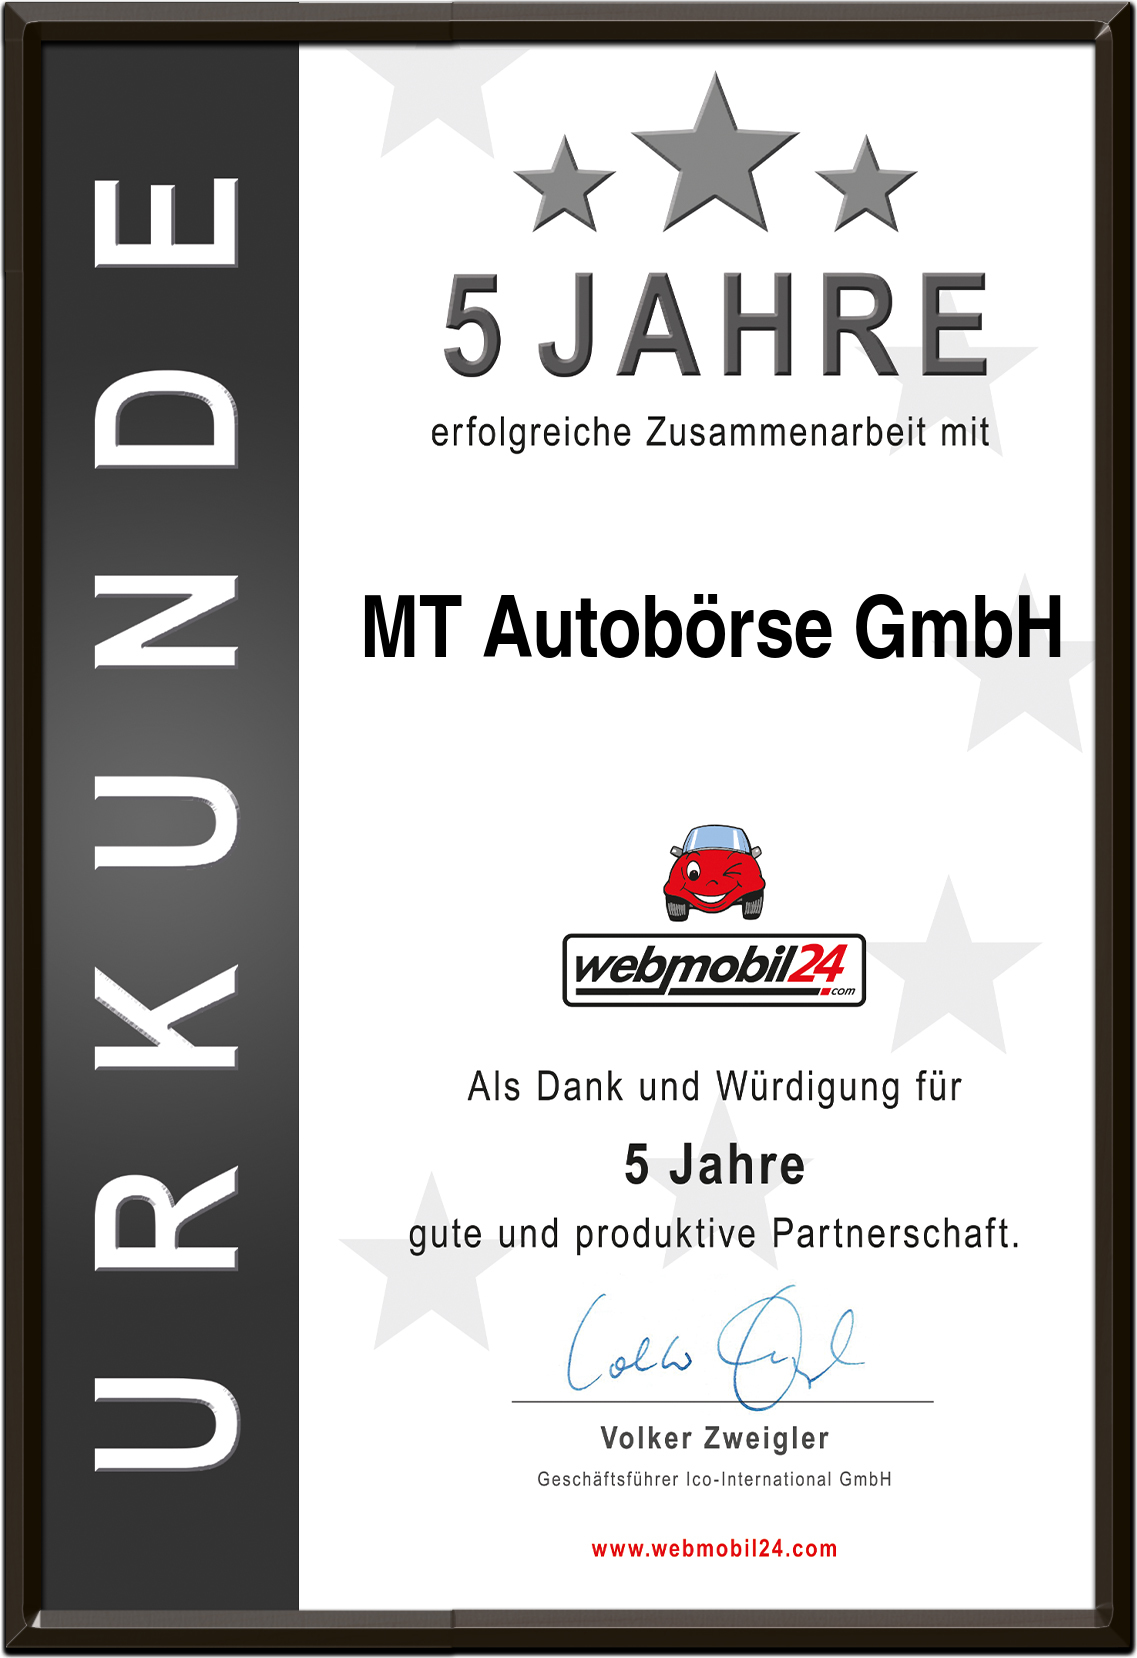 MT Autobörse GmbH